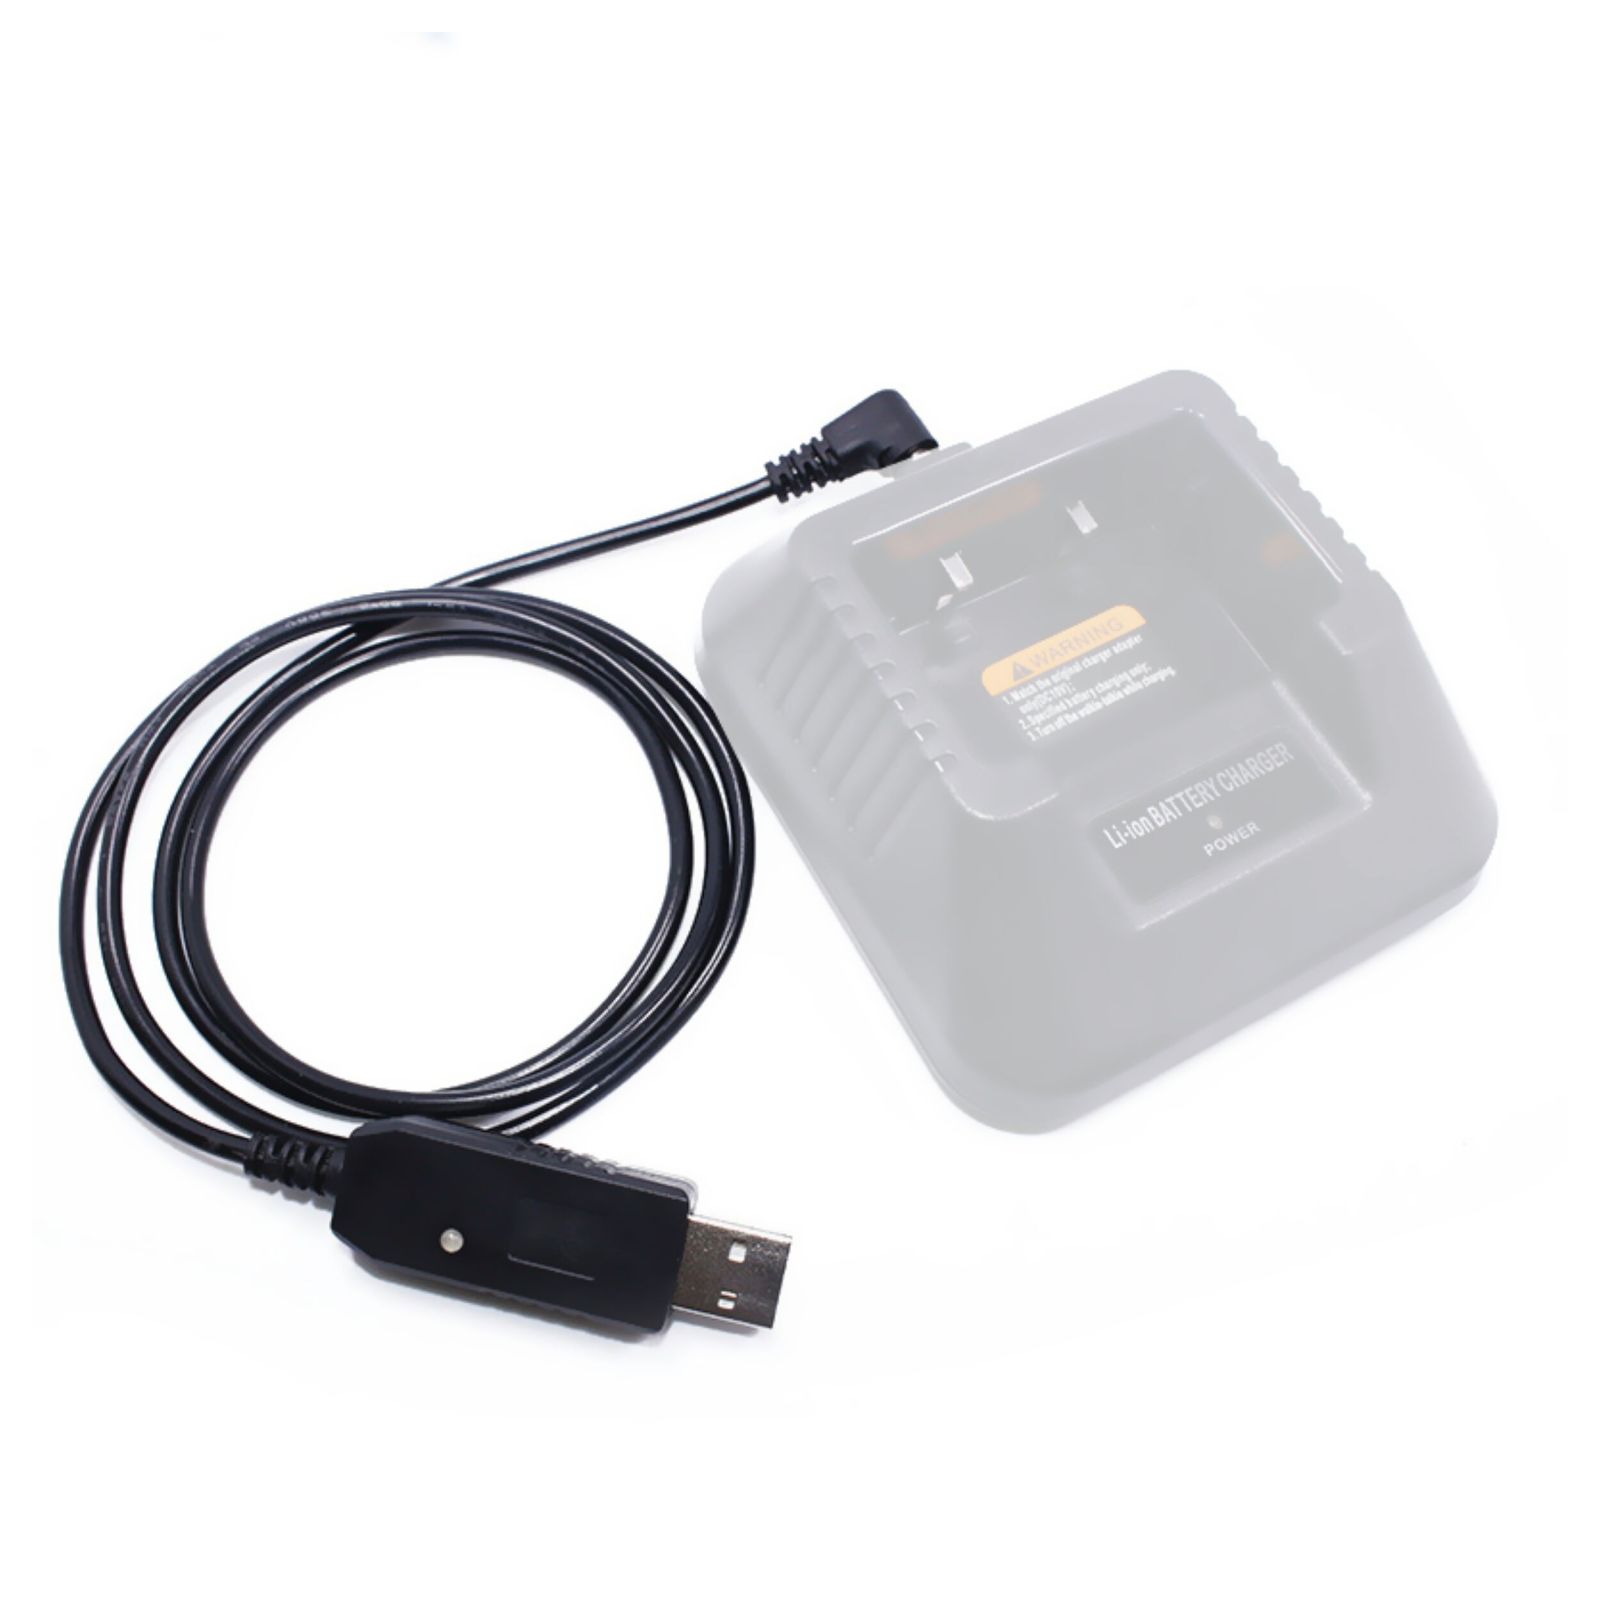 USB kábel pre 10V nabíjacie stanice od Boafeng UV-82HP a iné, dĺžka 1m